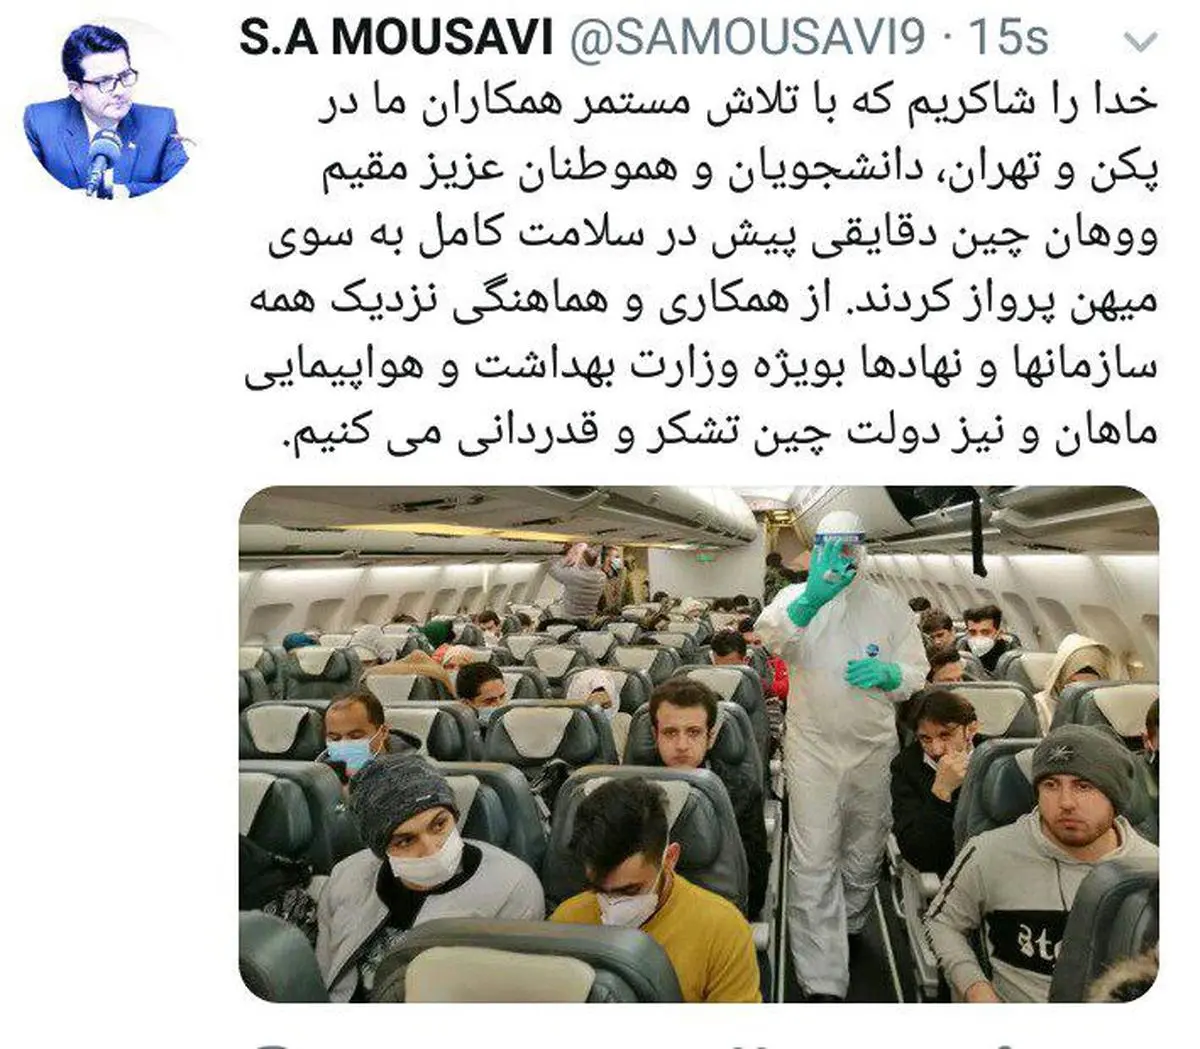 
موسوی: دانشجویان و هموطنان مقیم ووهان چین دقایقی پیش در سلامت کامل به سوی میهن پرواز کردند
